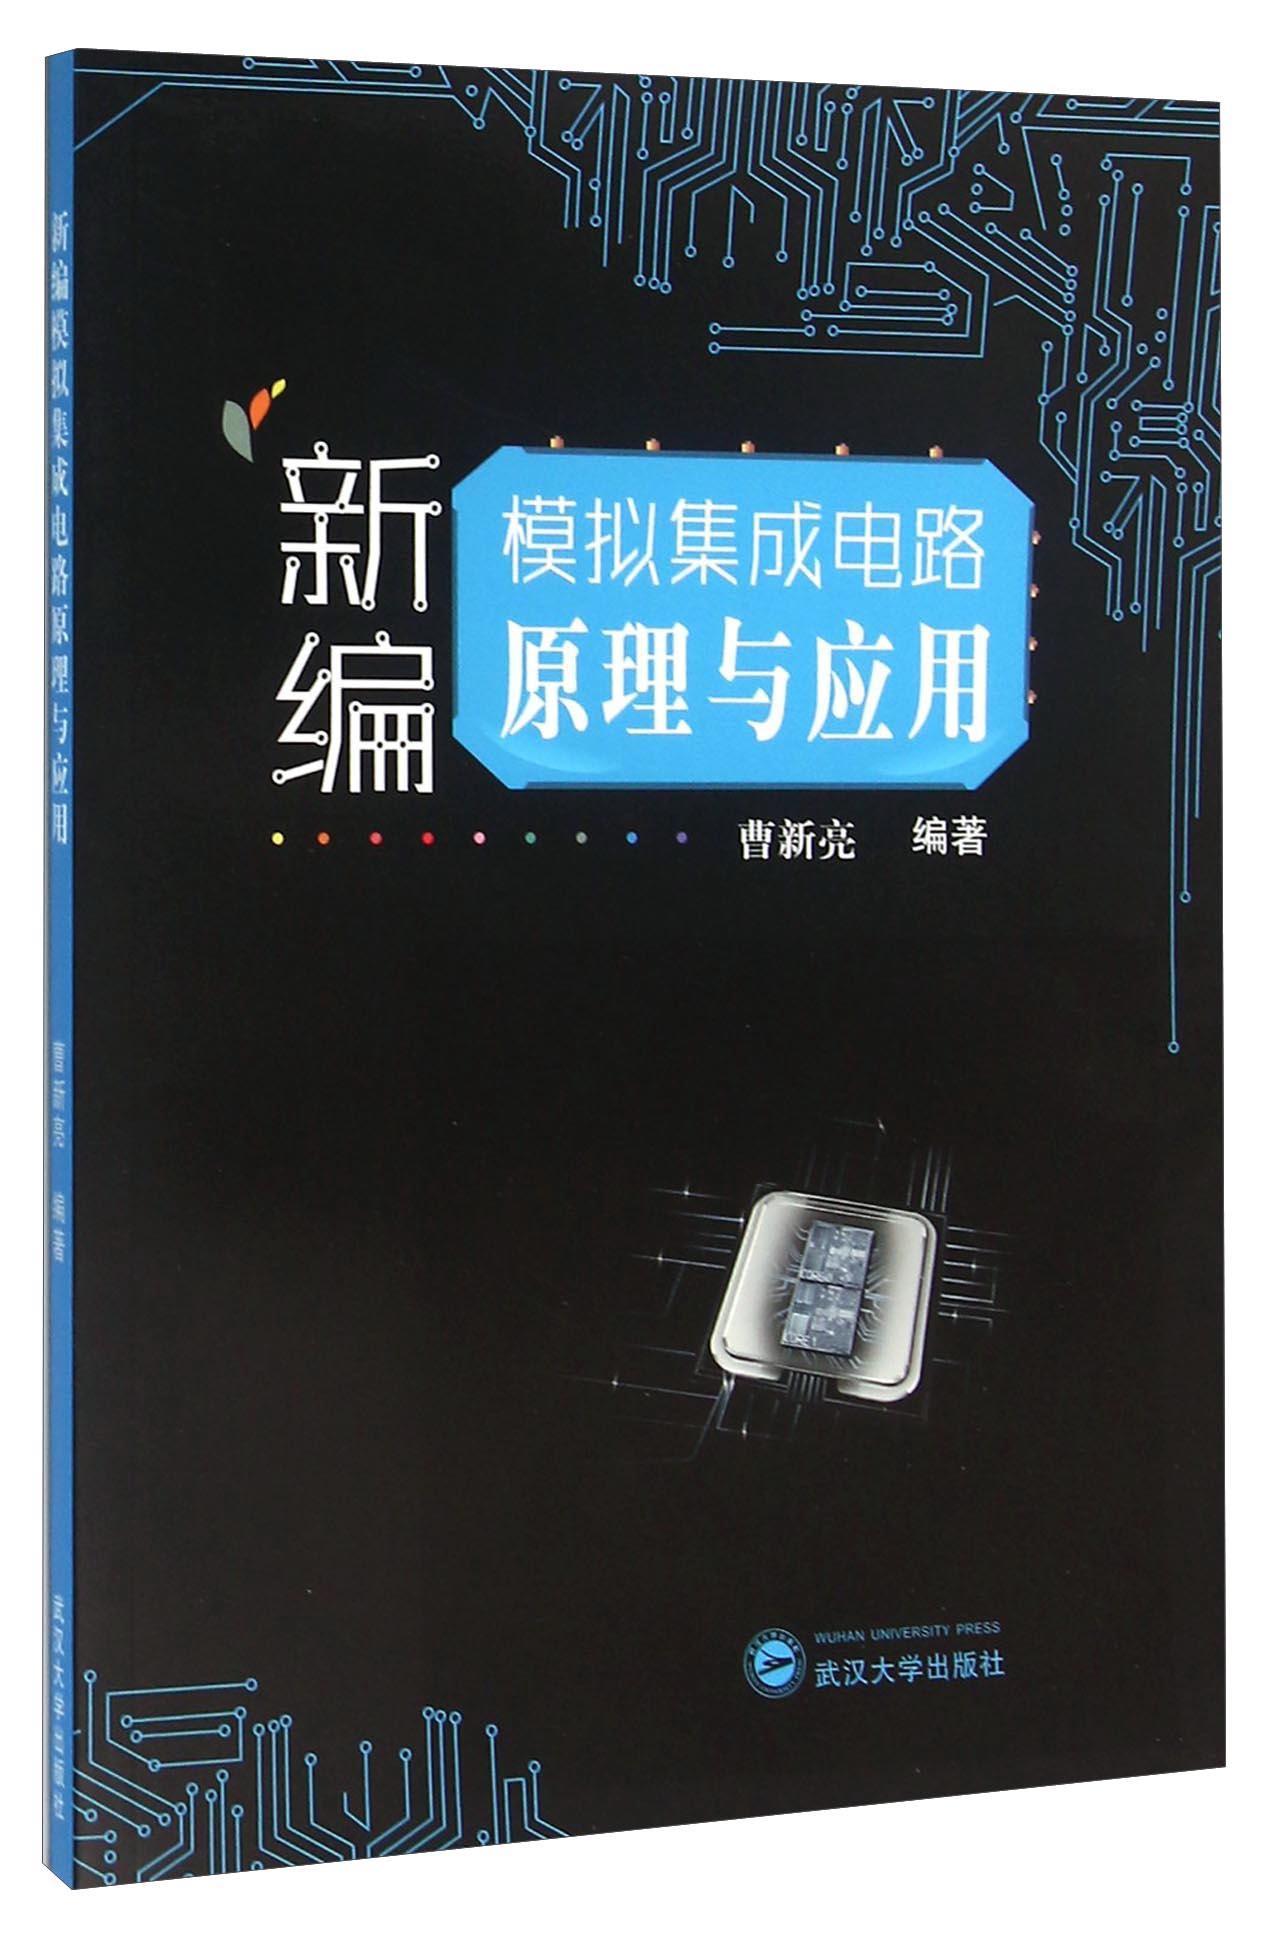 全新正版 模拟集成电路原理与应用 武汉大学出版社 9787307168626